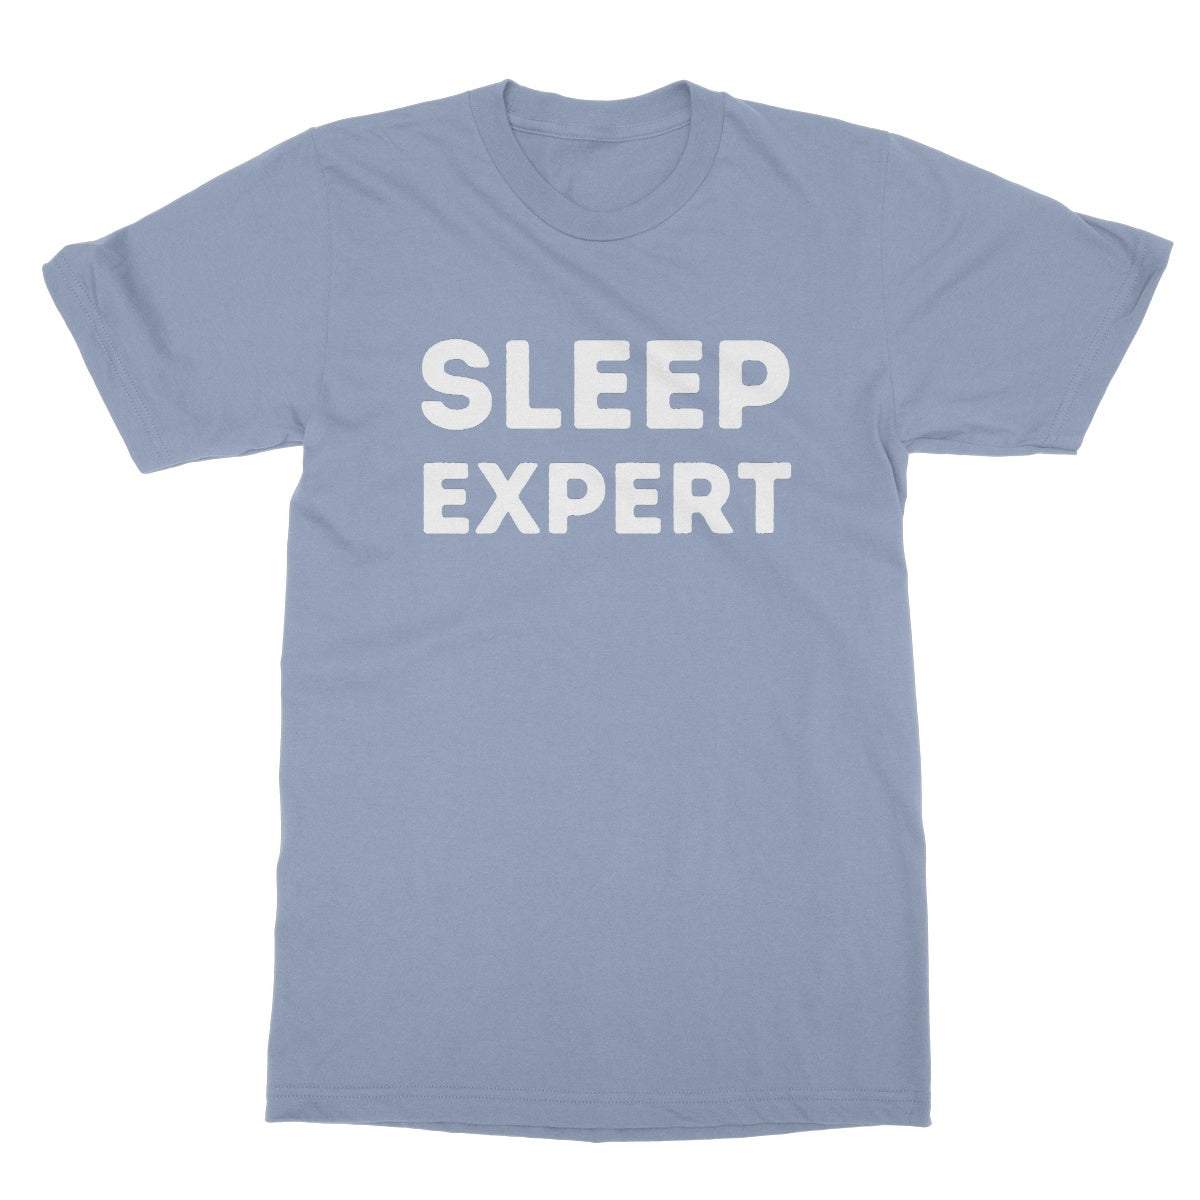 sleep expert t shirt blue